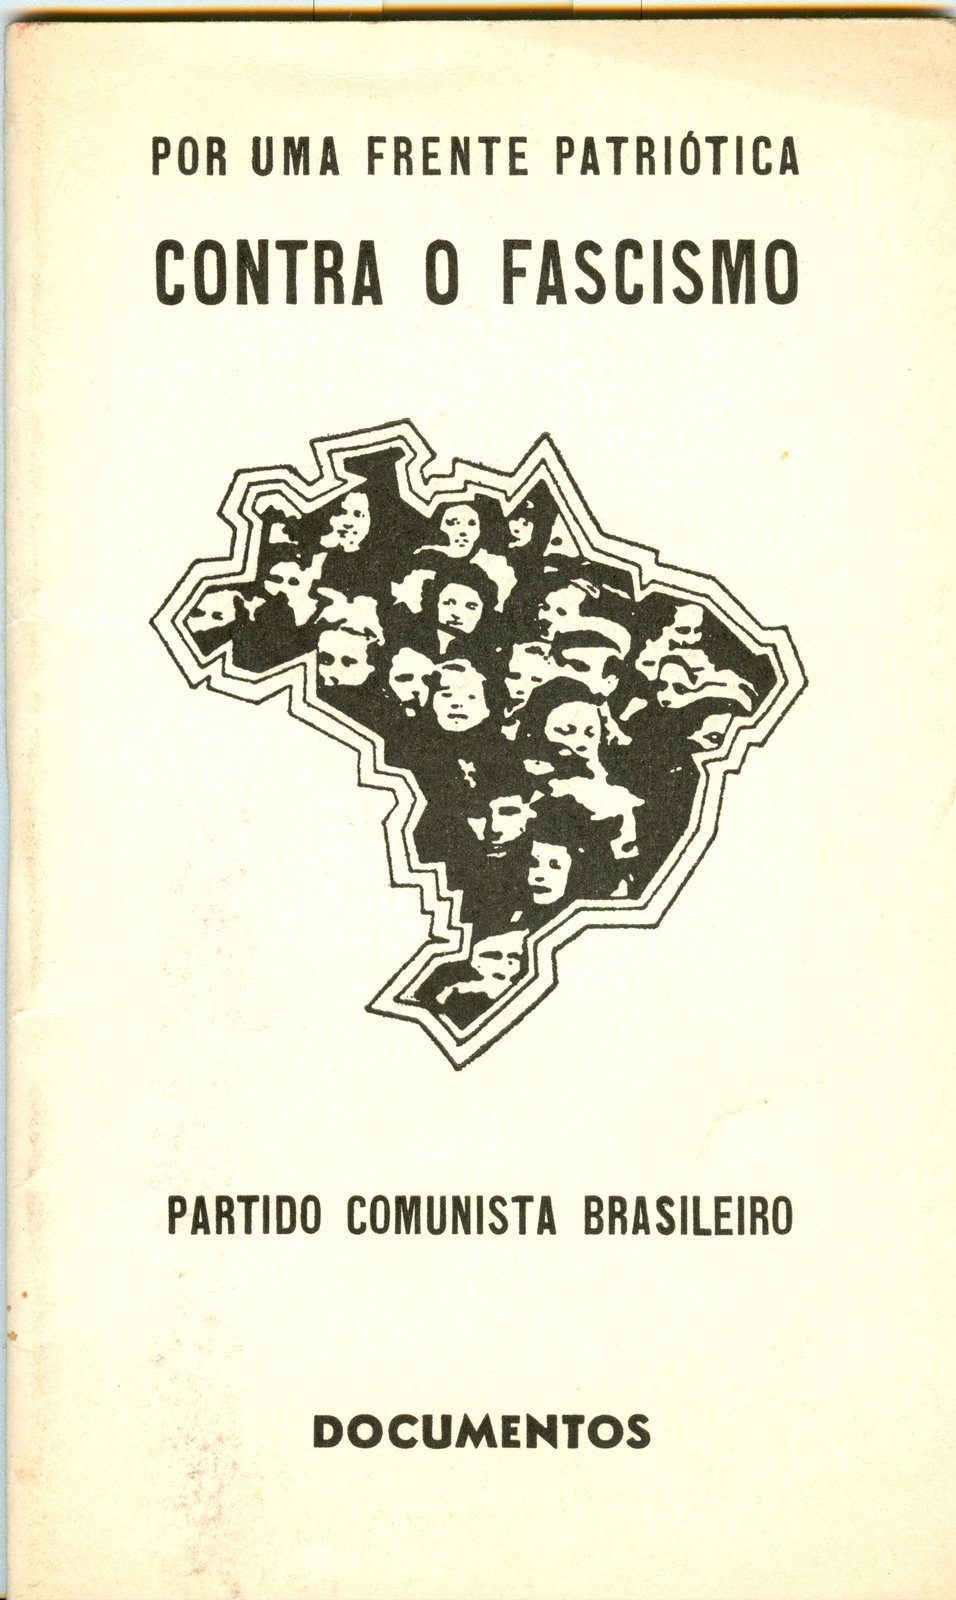 [Contra+o+fascismo,+Partido+Comunista+Brasileiro.jpg]